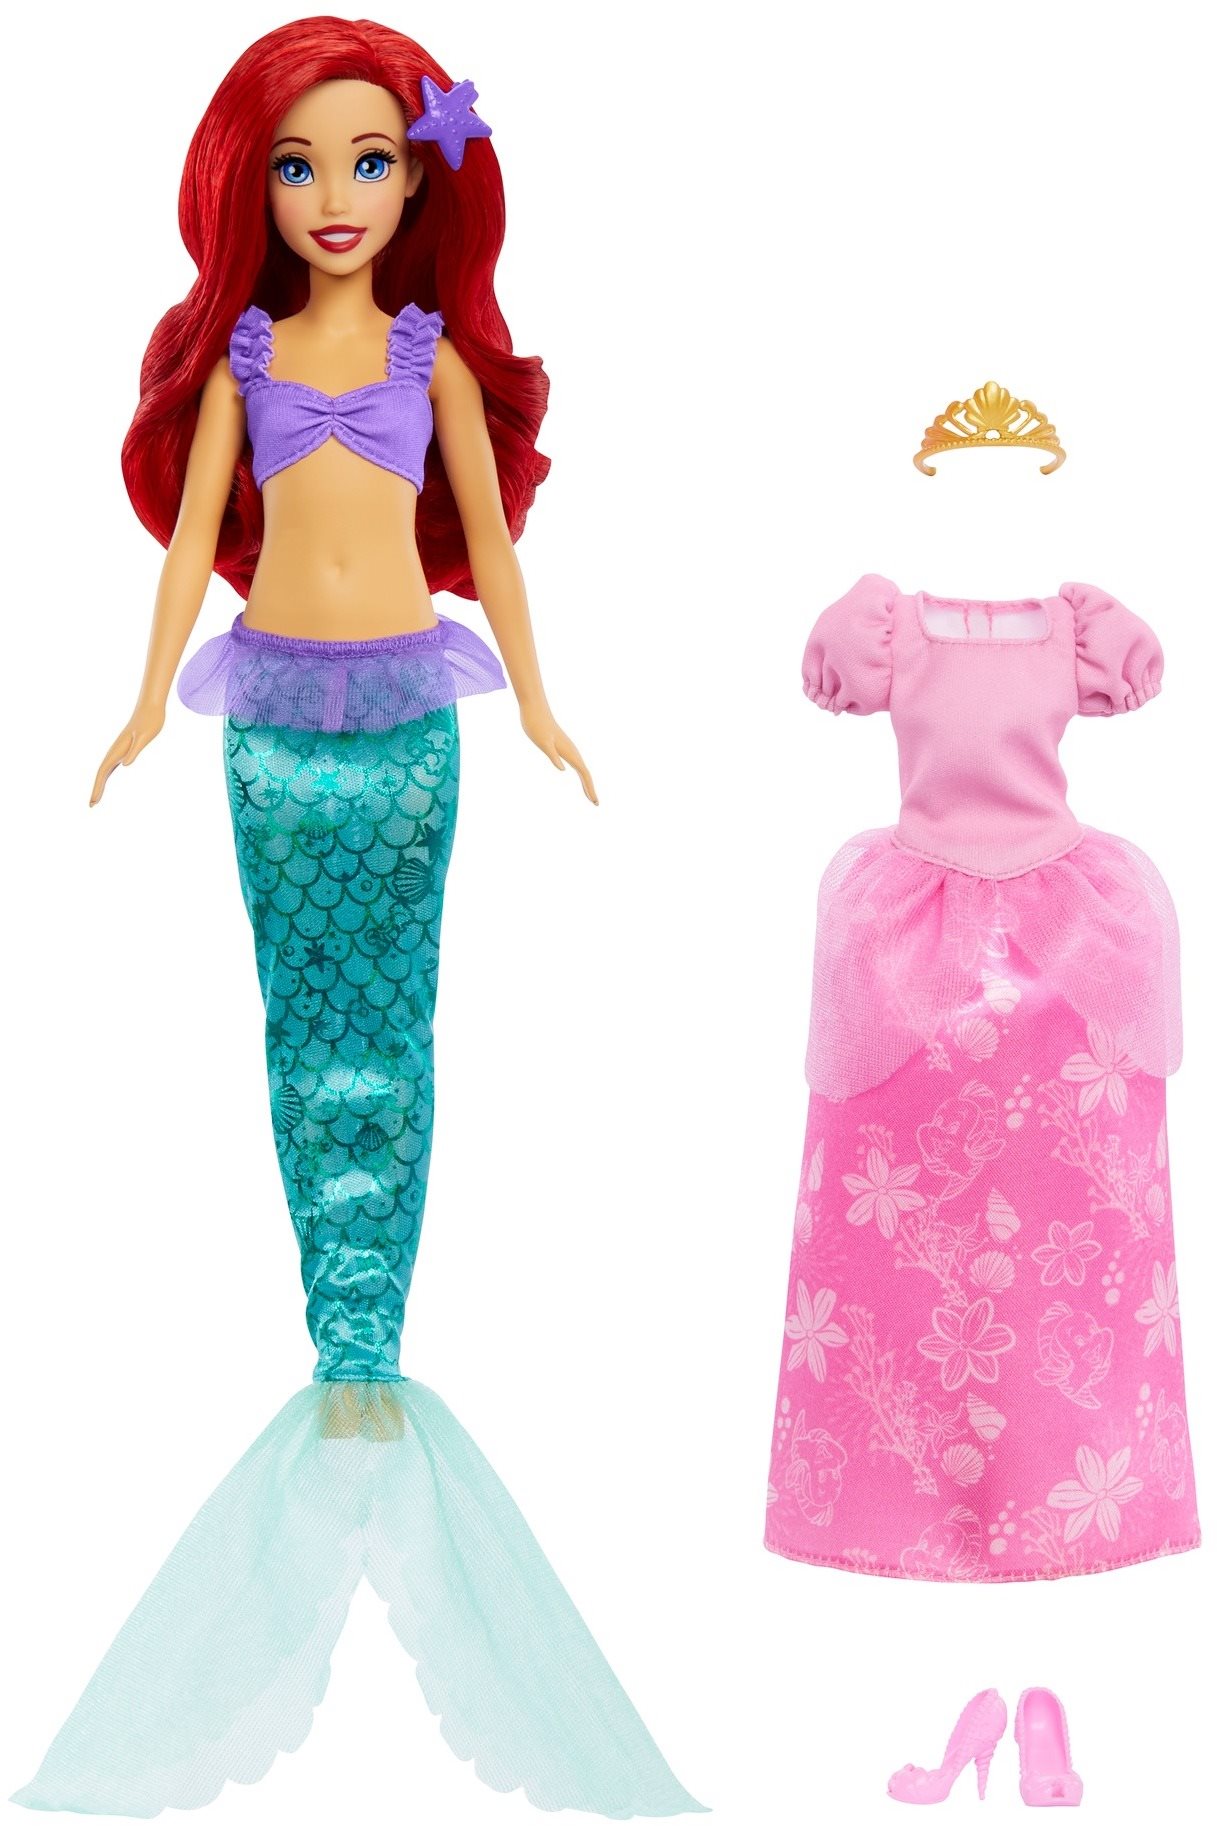 Disney hercegnő A kis hableány, Ariel hercegnő ruhában